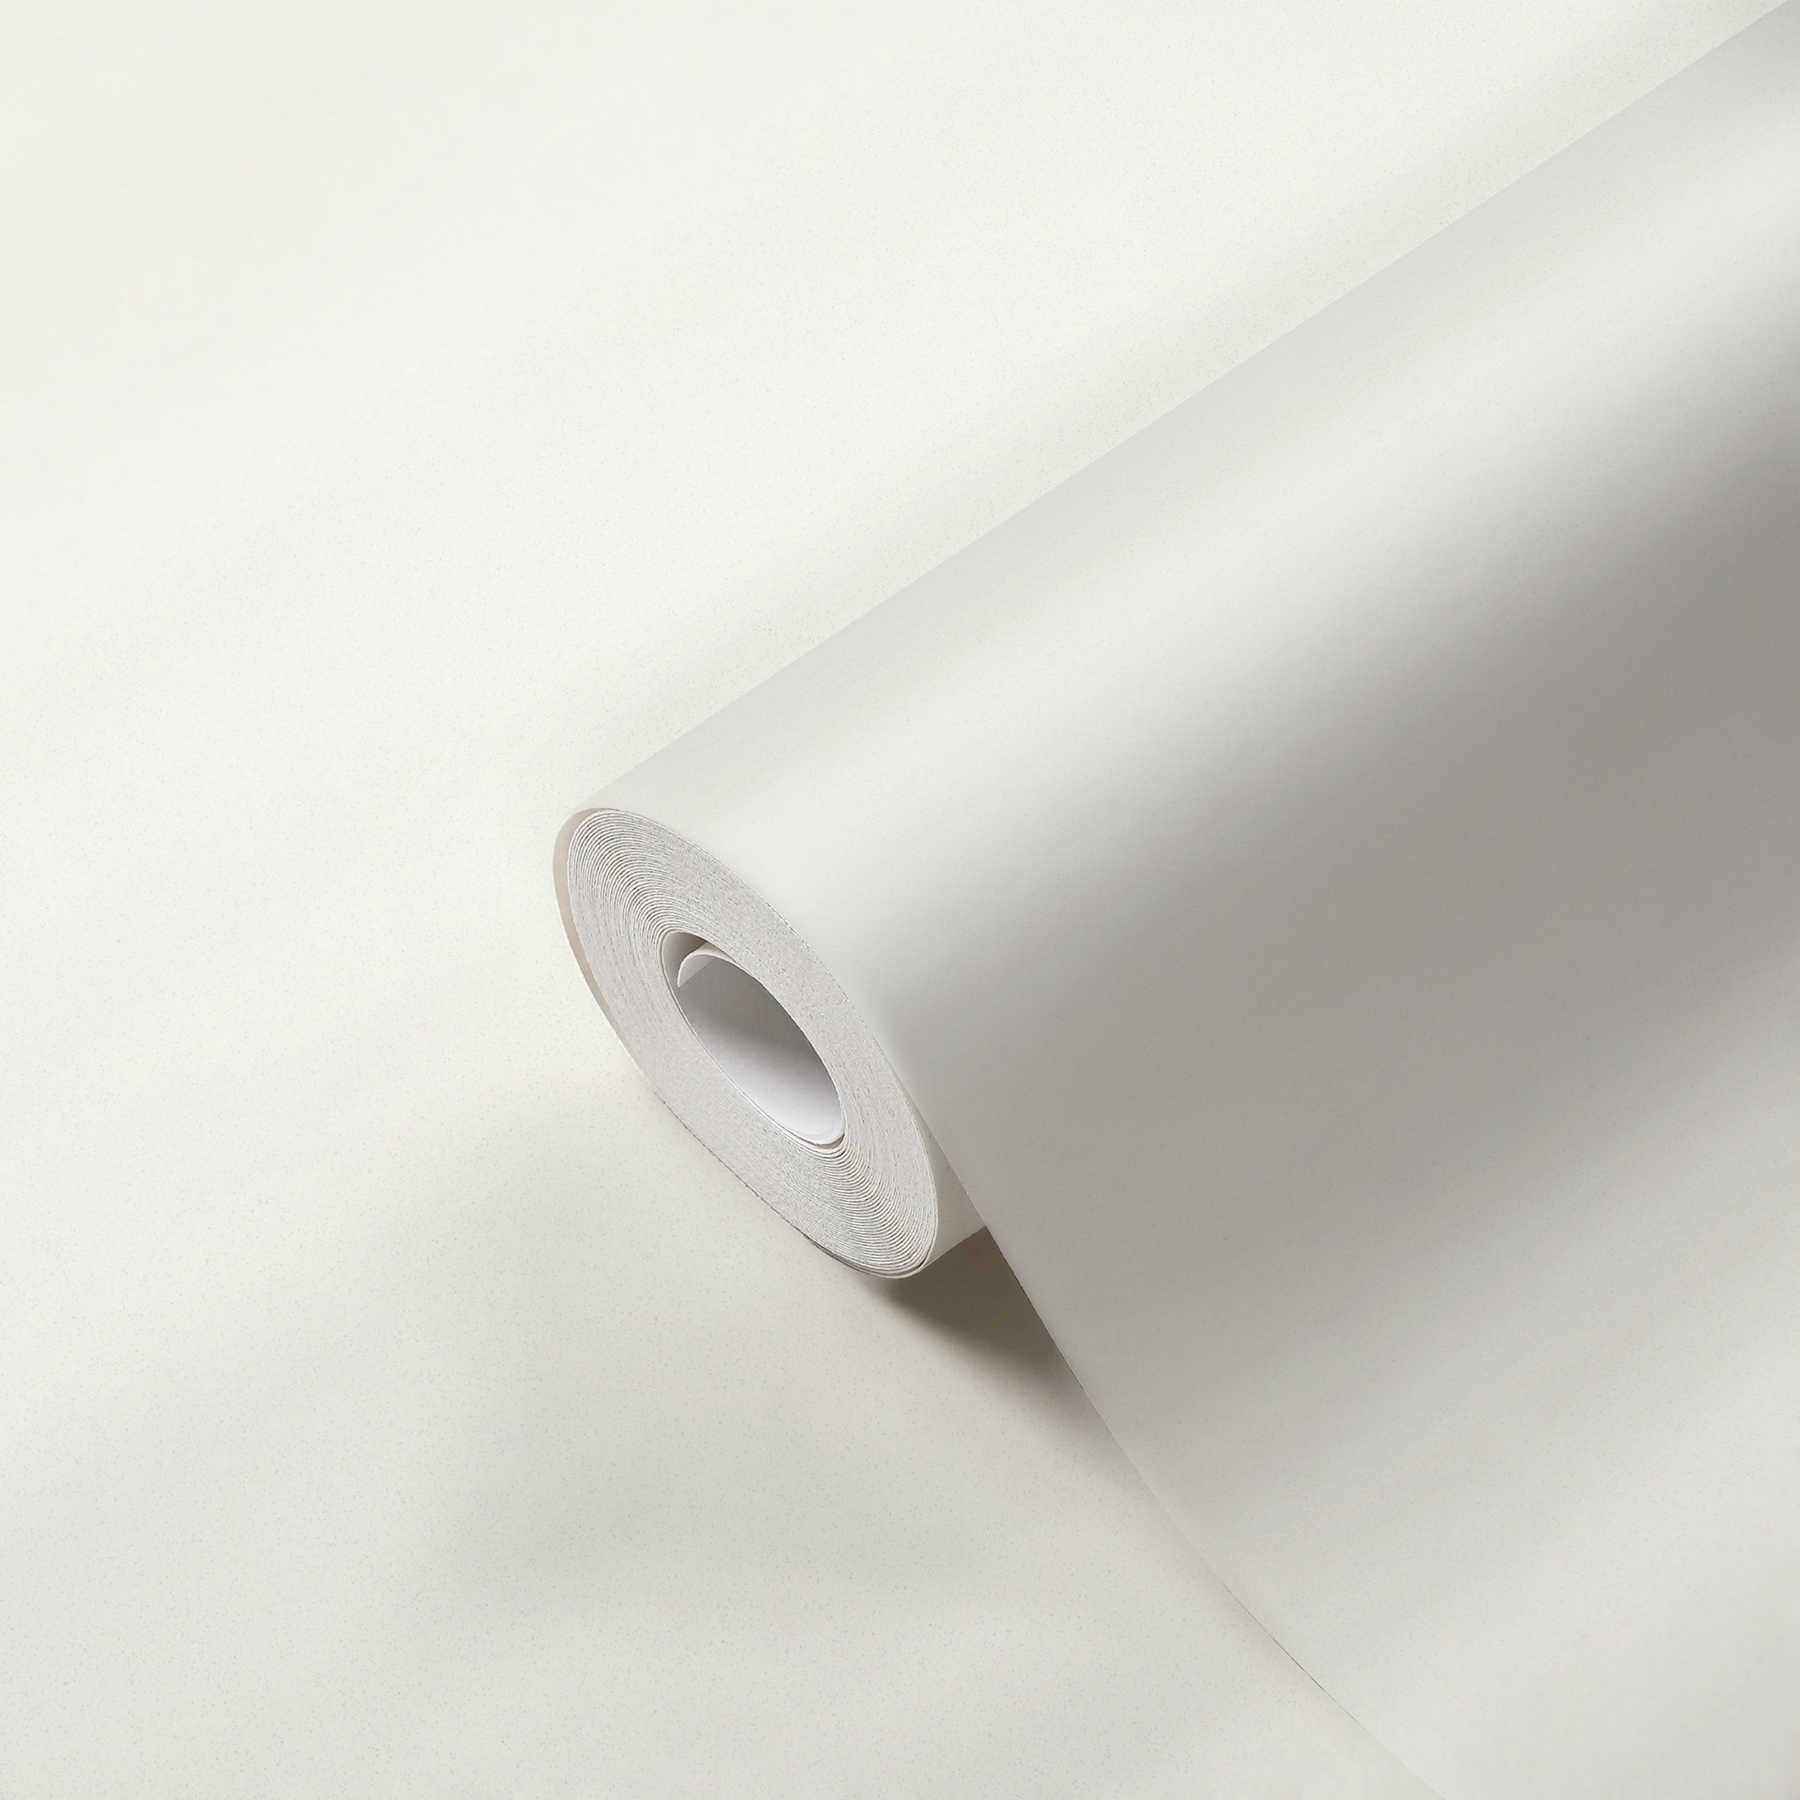             Papier peint uni Scandinavian Style avec motifs structurés - crème, blanc
        